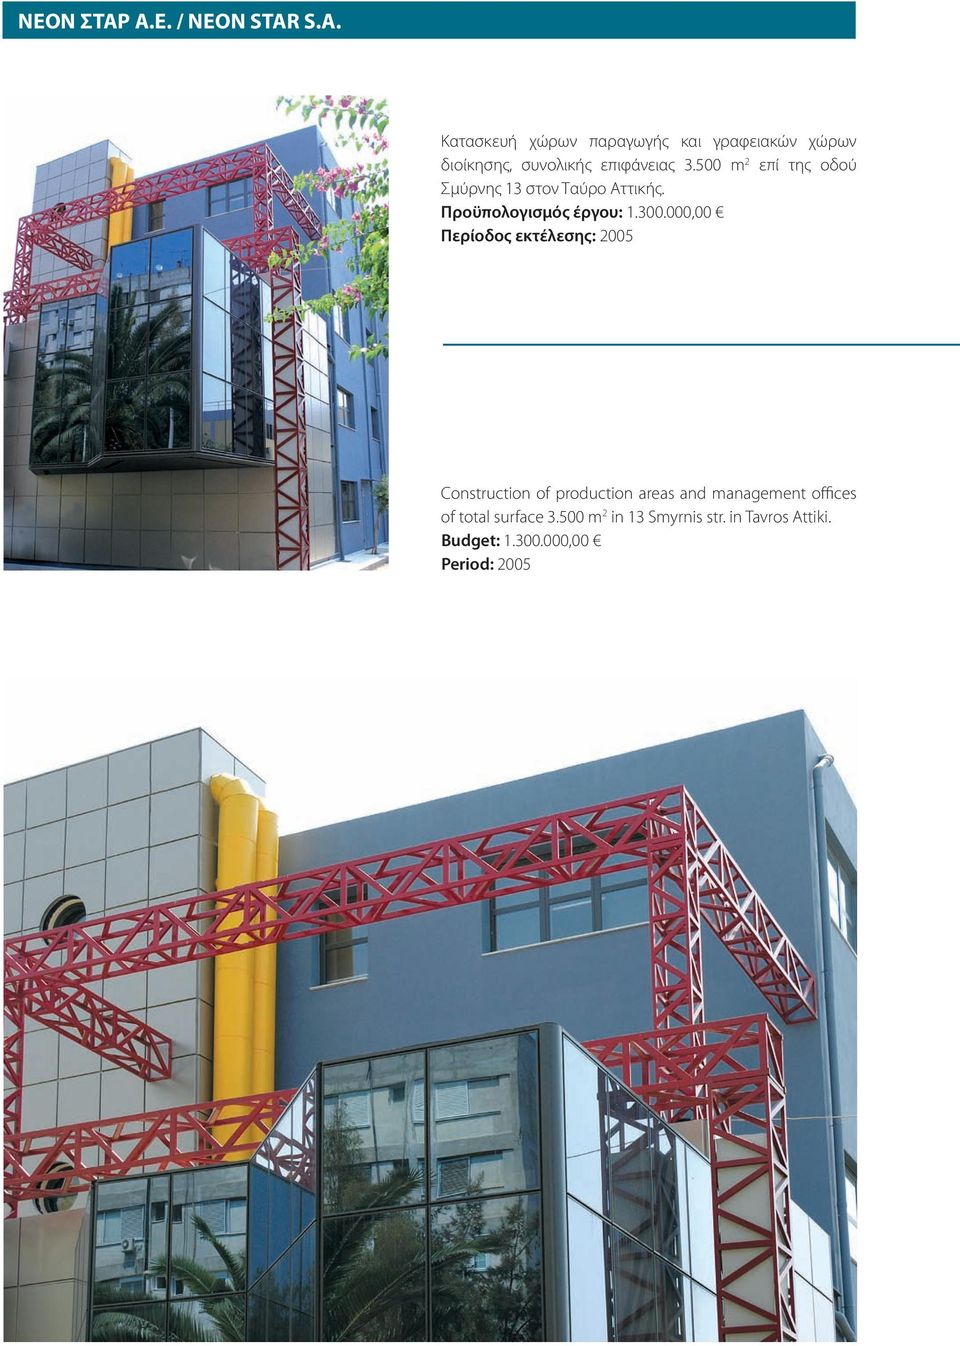 000,00 Περίοδος εκτέλεσης: 2005 Construction of production areas and management offices of